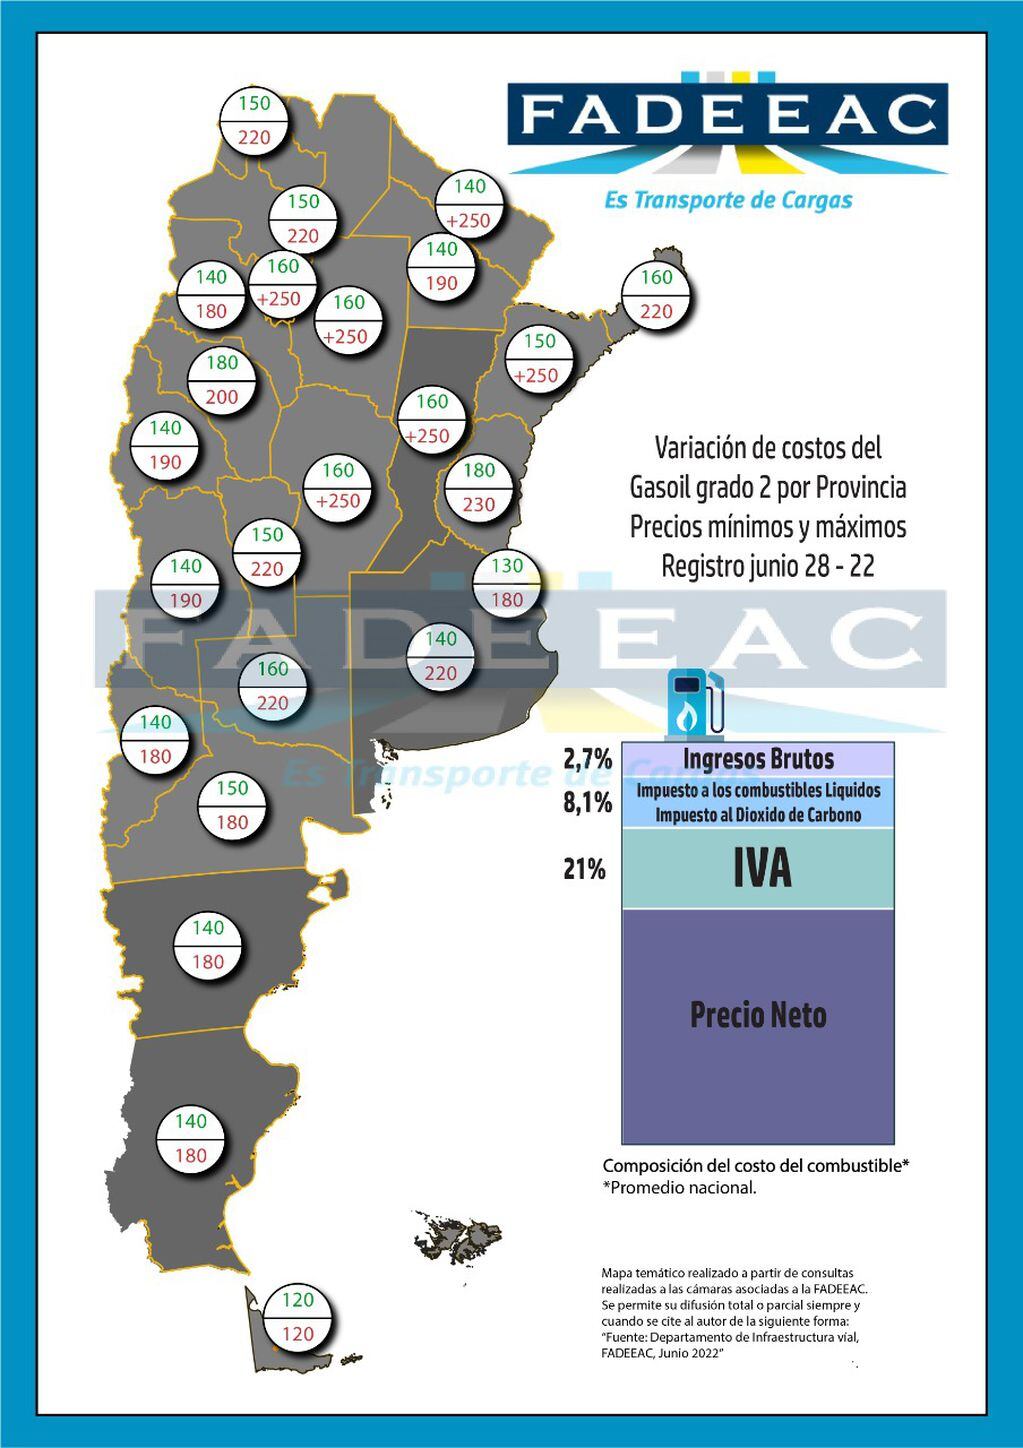 Con la falta de gasoil los precios son muy dispares en las los distintos puntos del país, Mendoza se encuentra en el puesto 18.